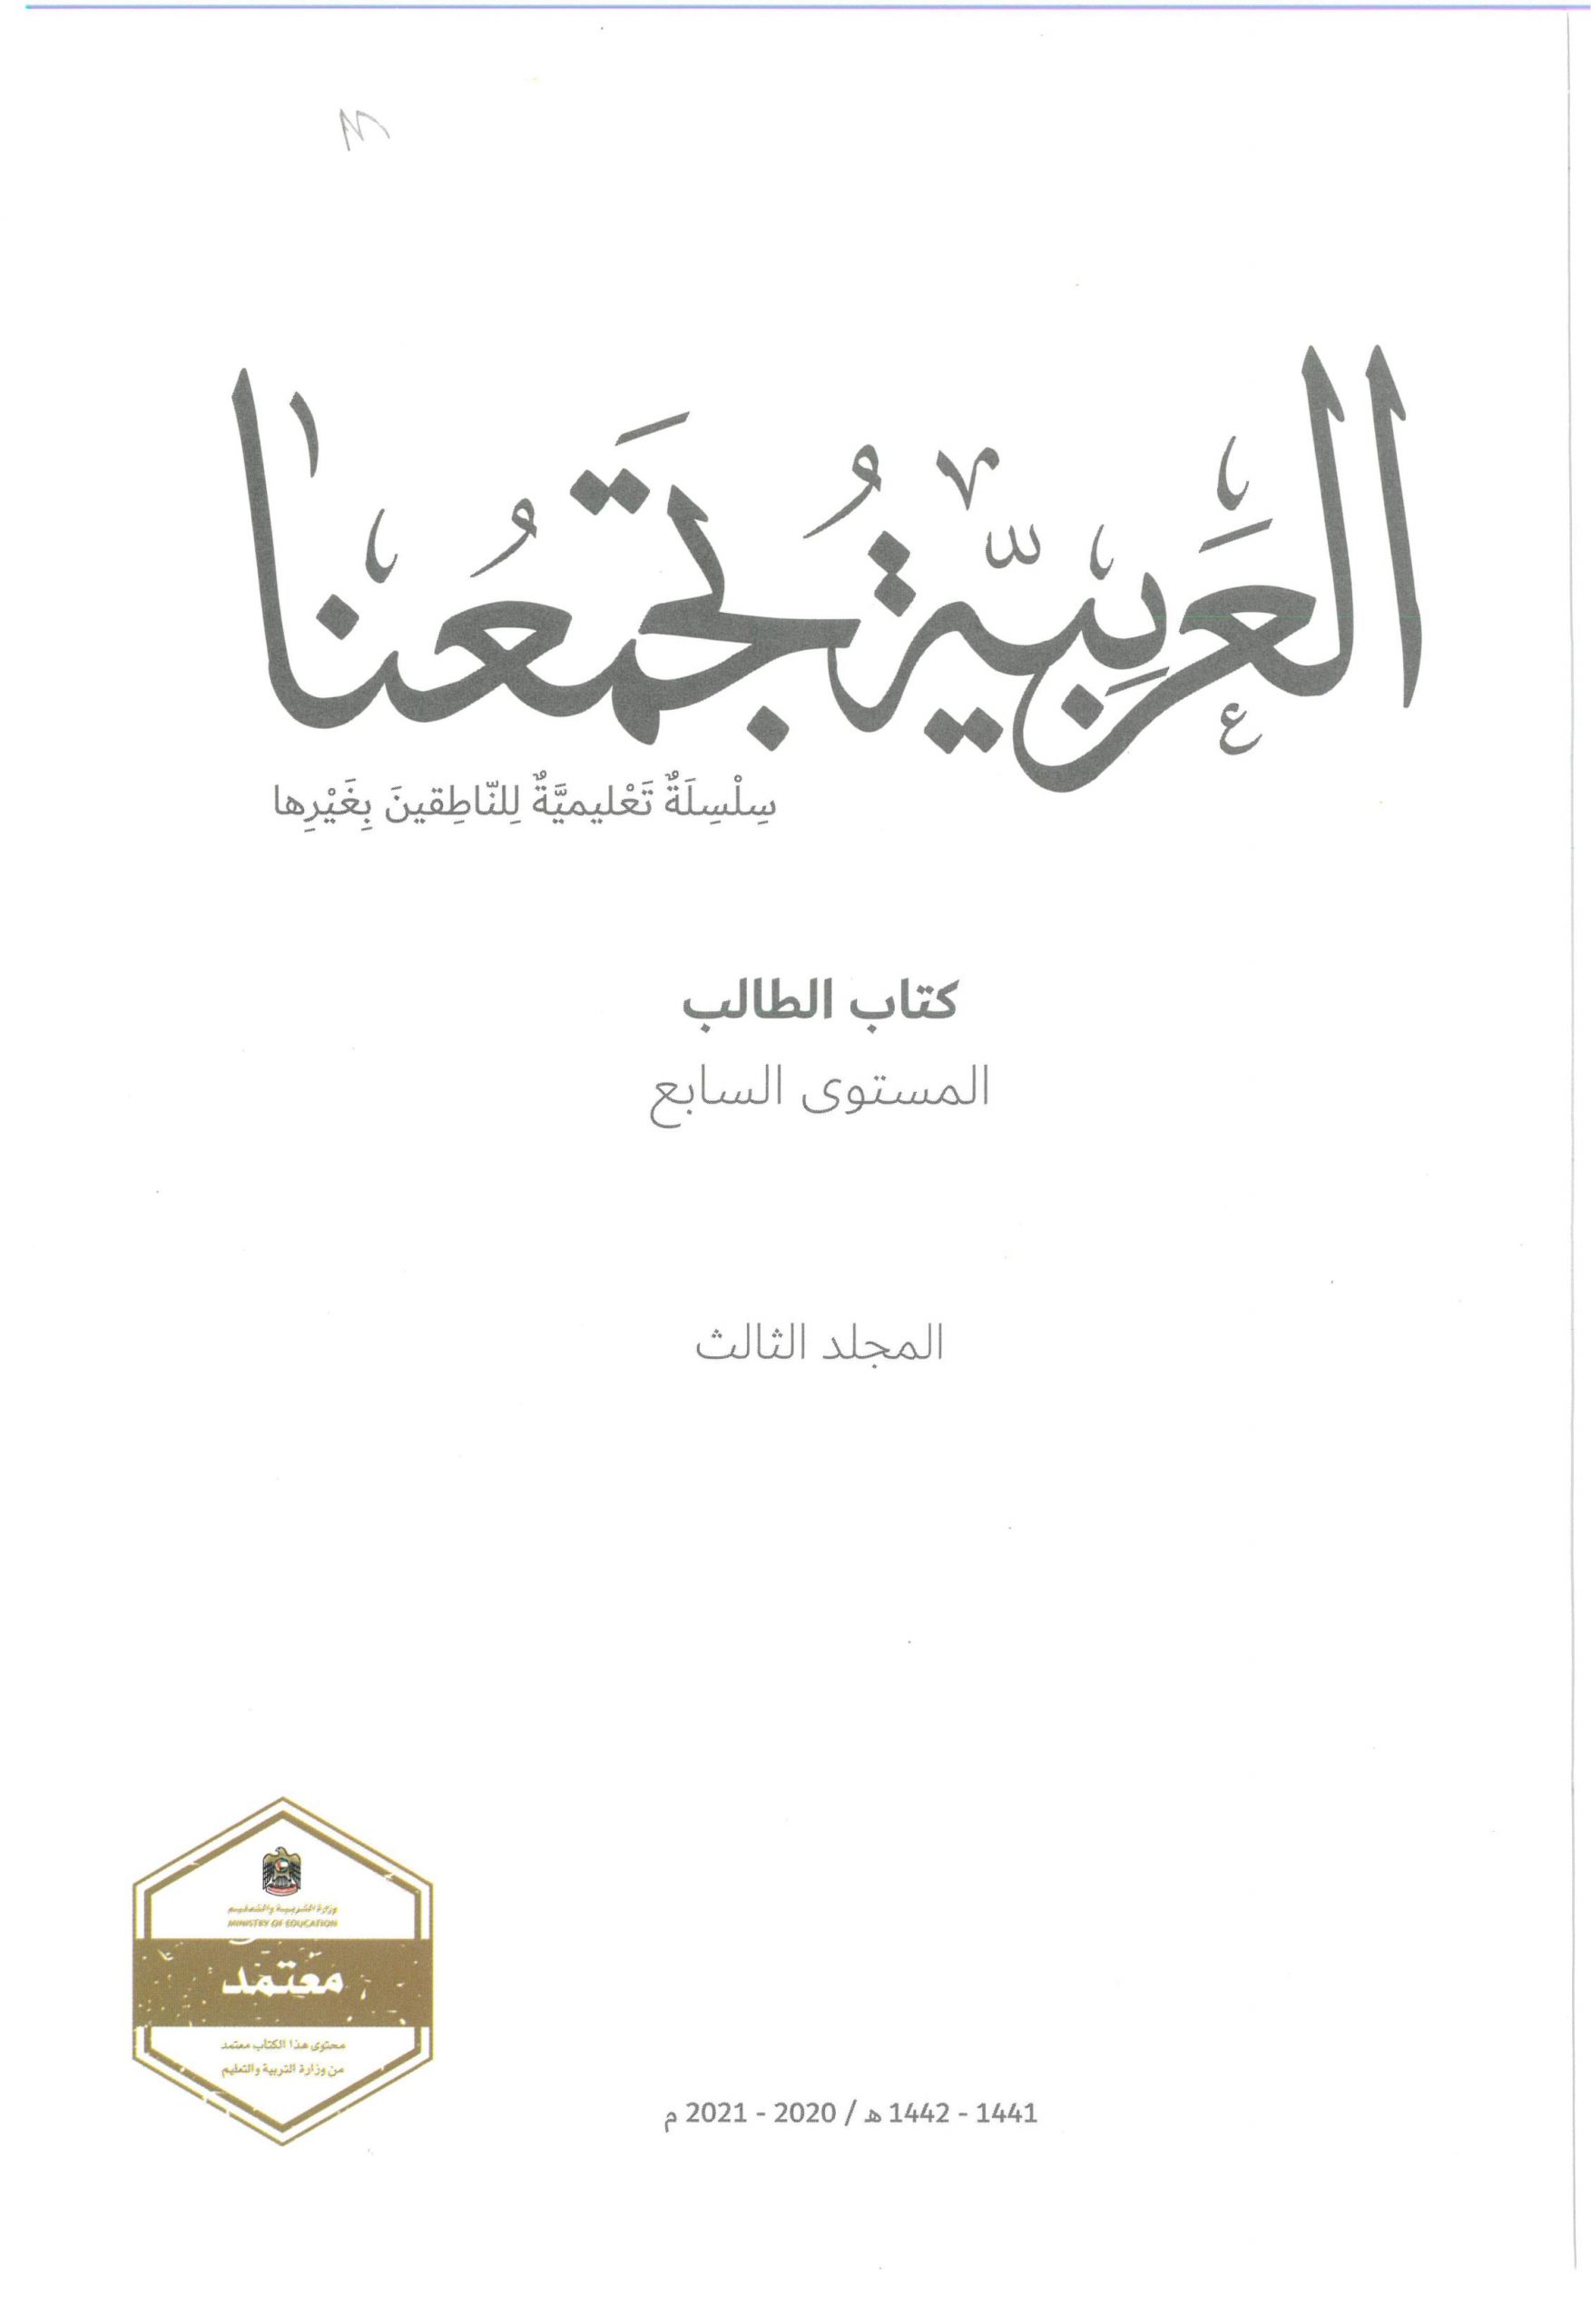 كتاب الطالب لغير الناطقين بها الفصل الدراسي الثالث 2020-2021 الصف السابع مادة اللغة العربية